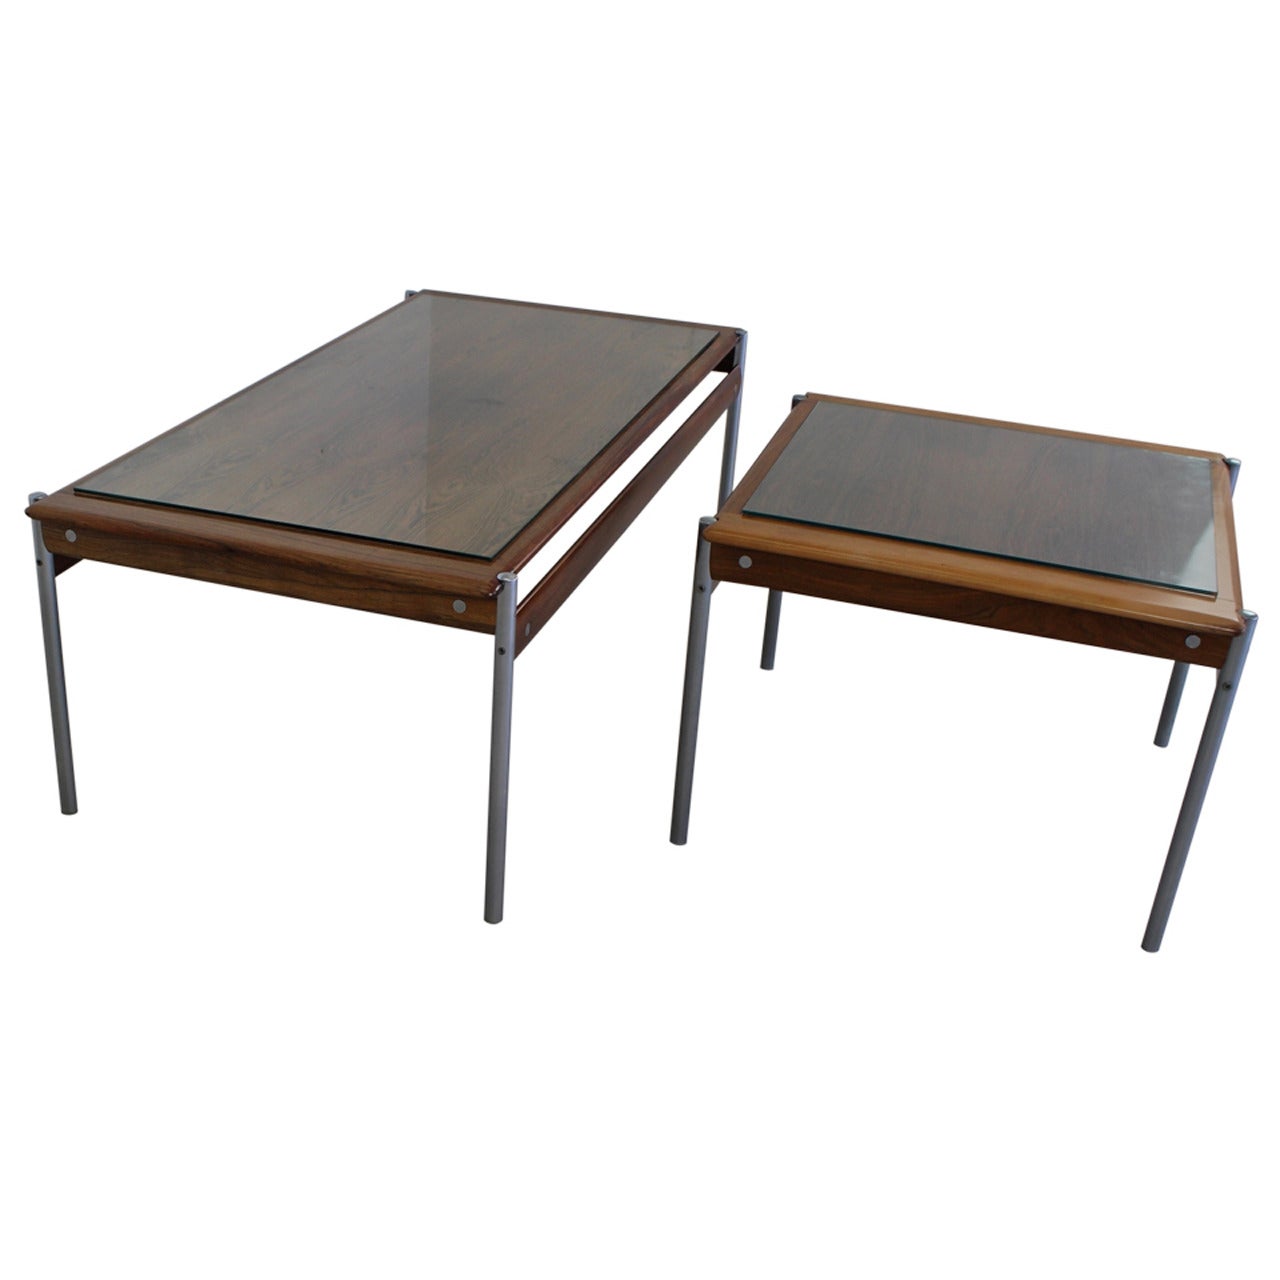 Set of Two Side Tables by Sven Ivar Dysthe for Dokka Mobler